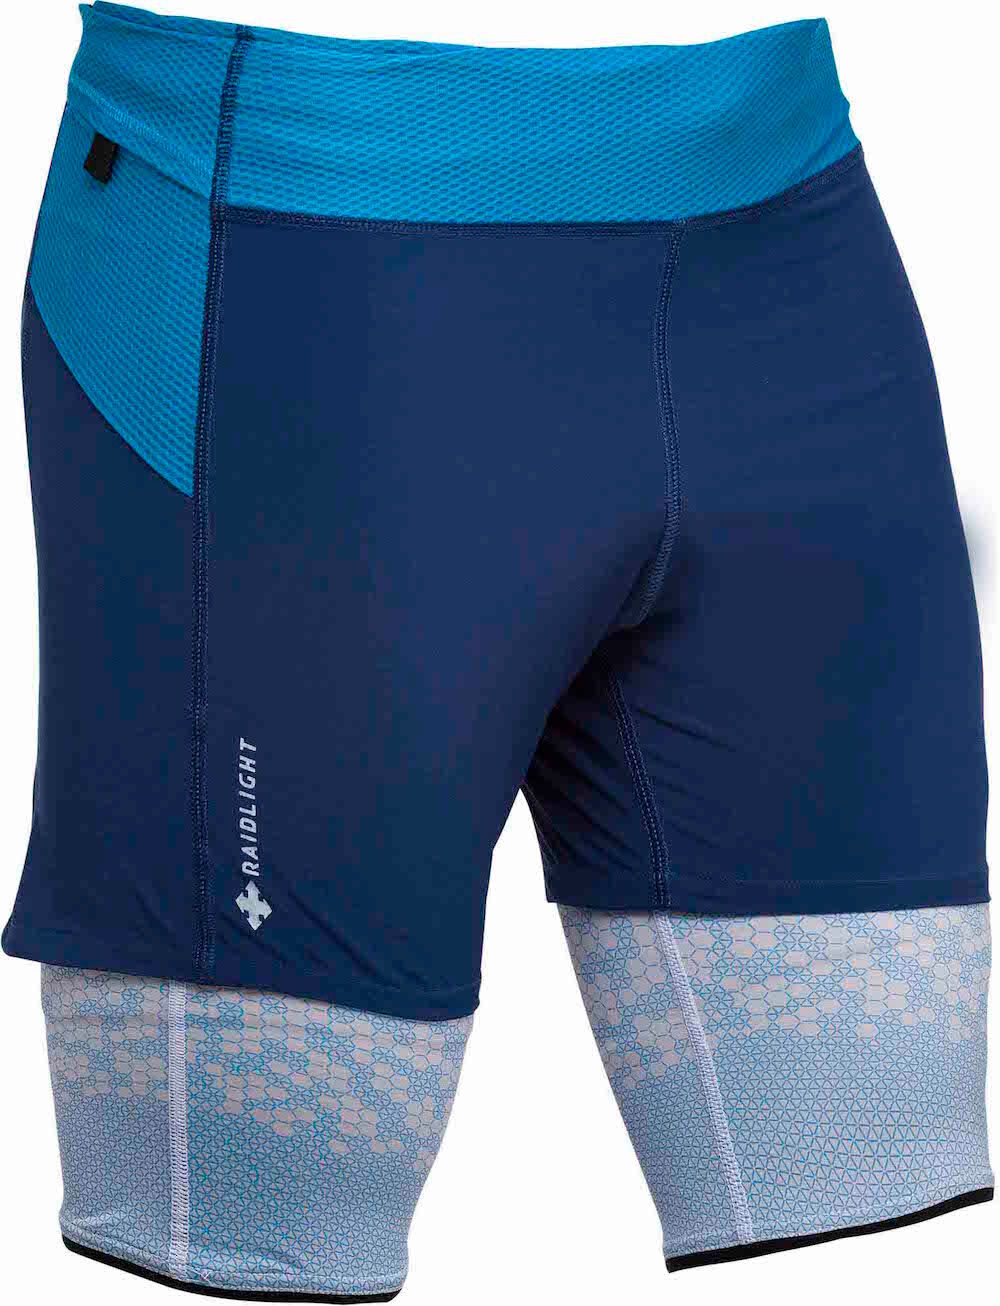 Raidlight Ultralight Short - Running shorts - Men's